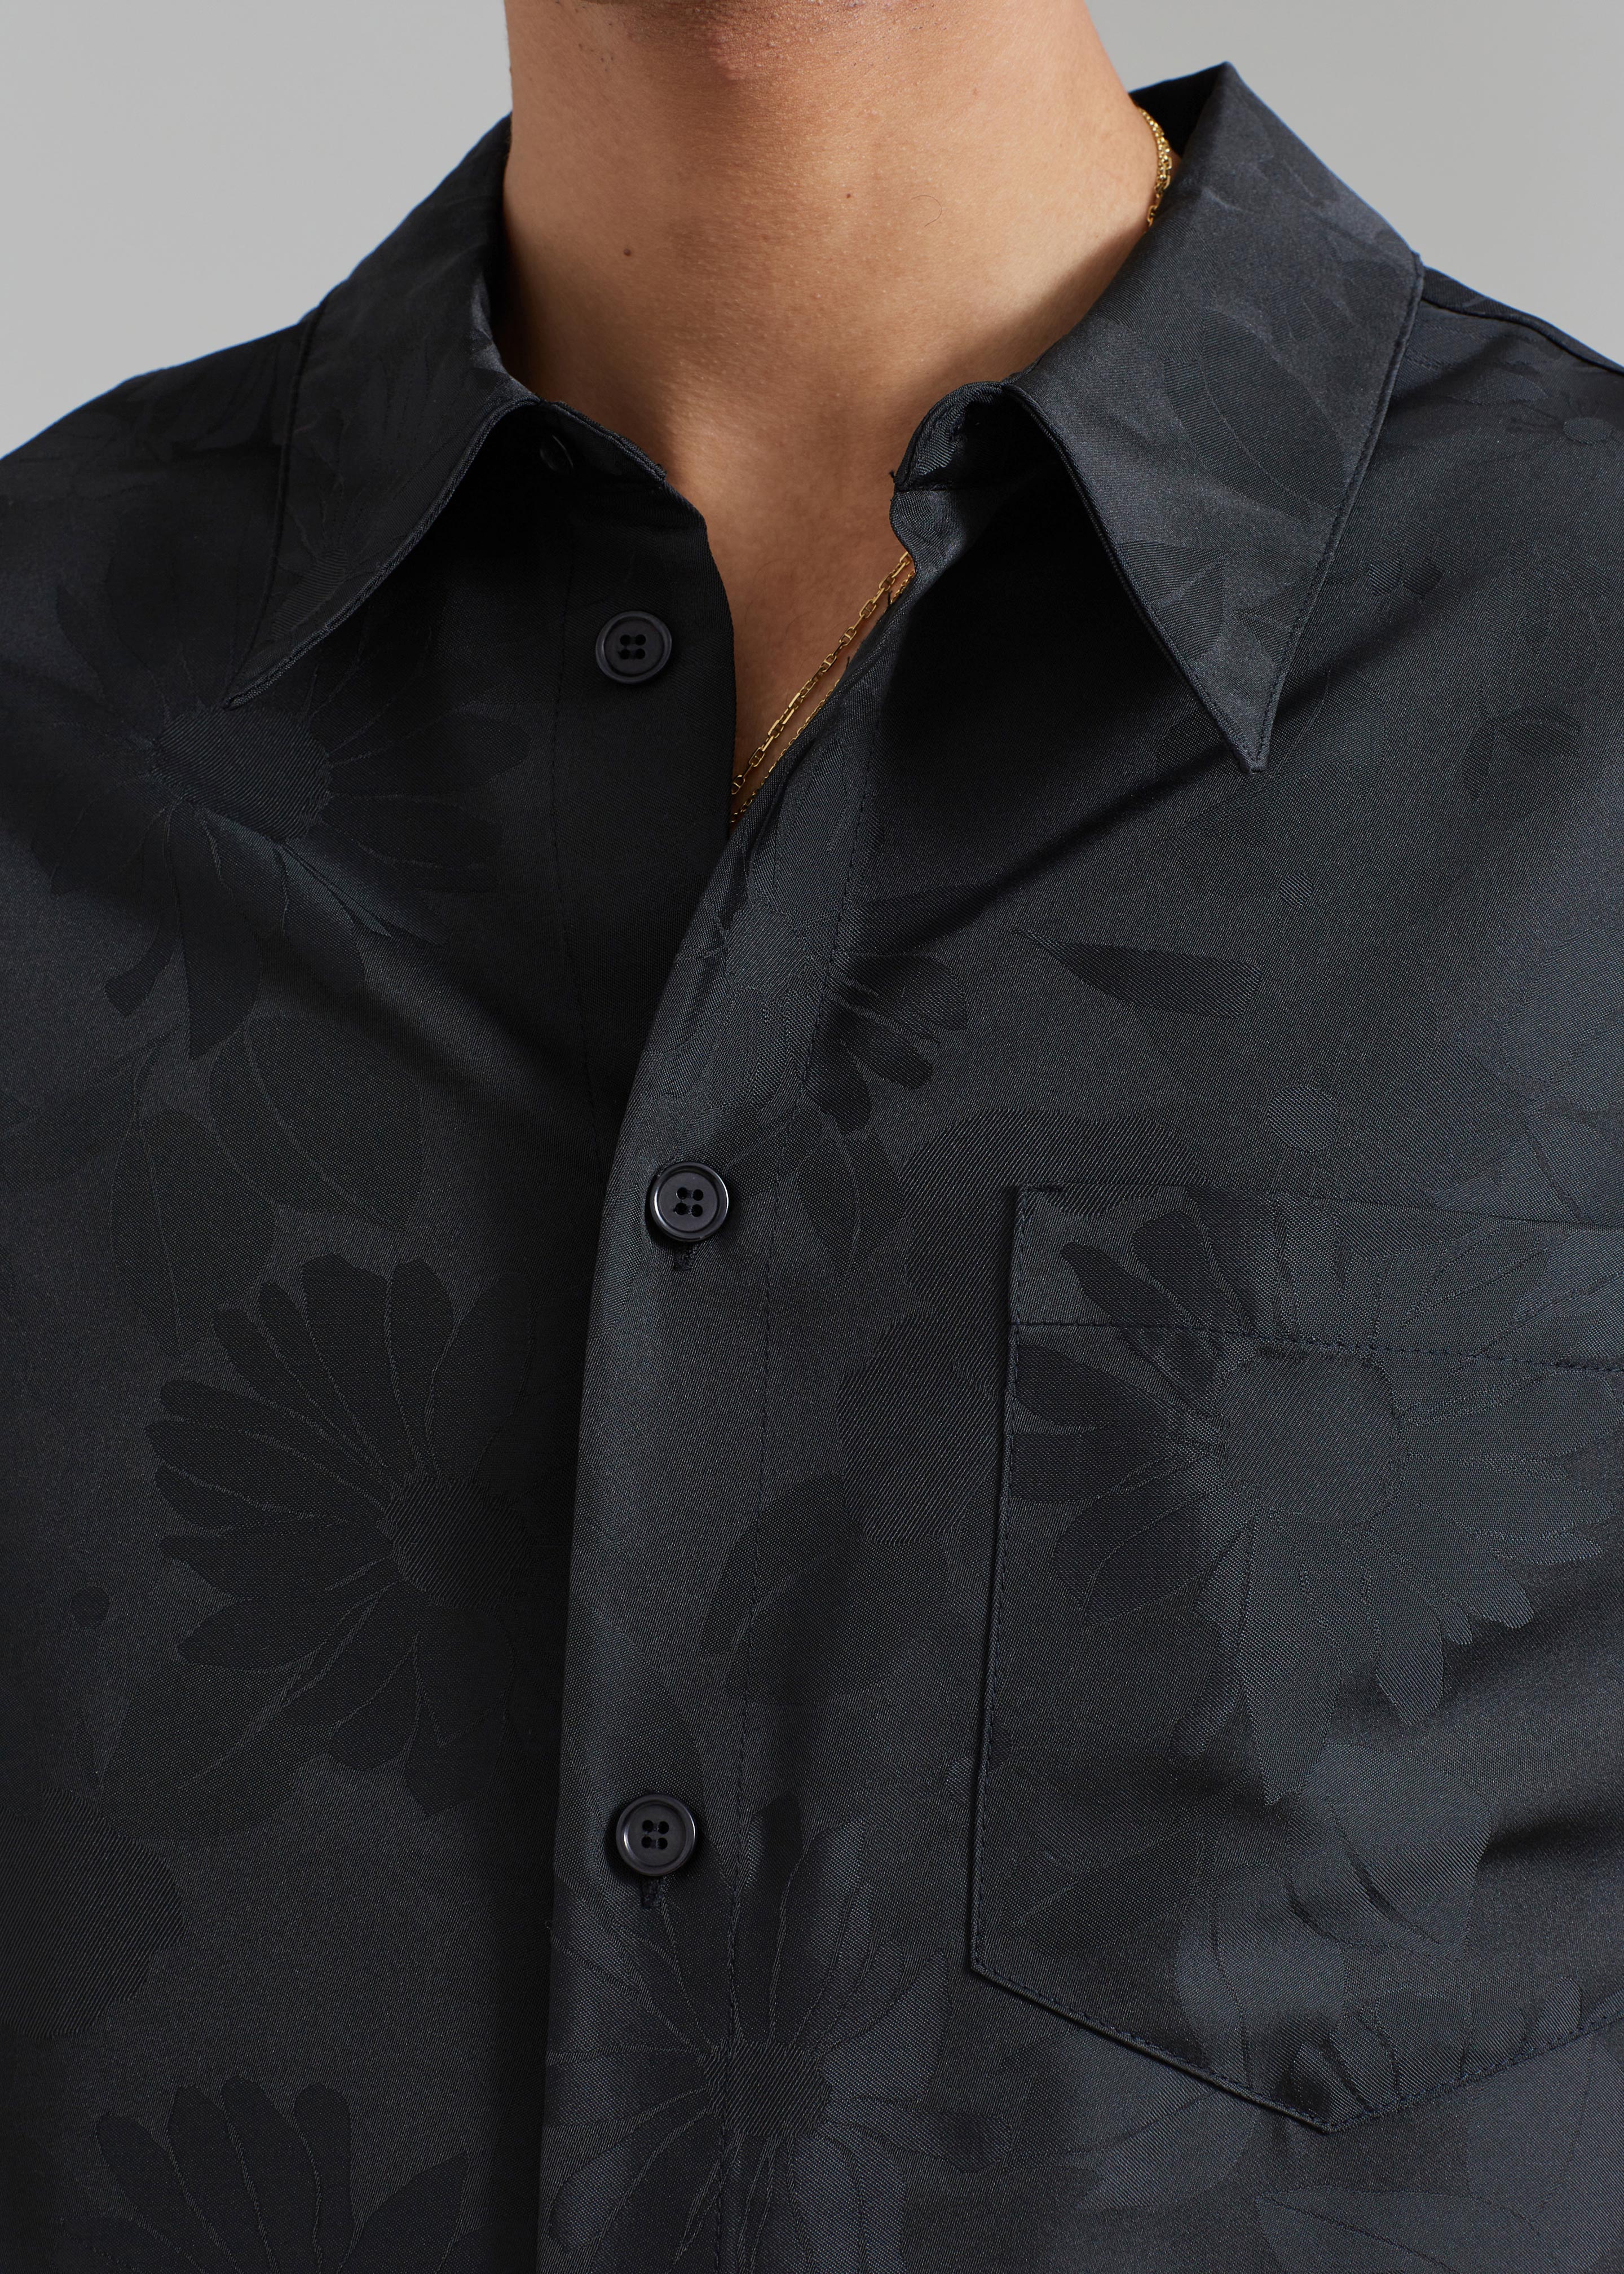 Róhe Floral Jacquard Shirt - Black Jacquard - 5